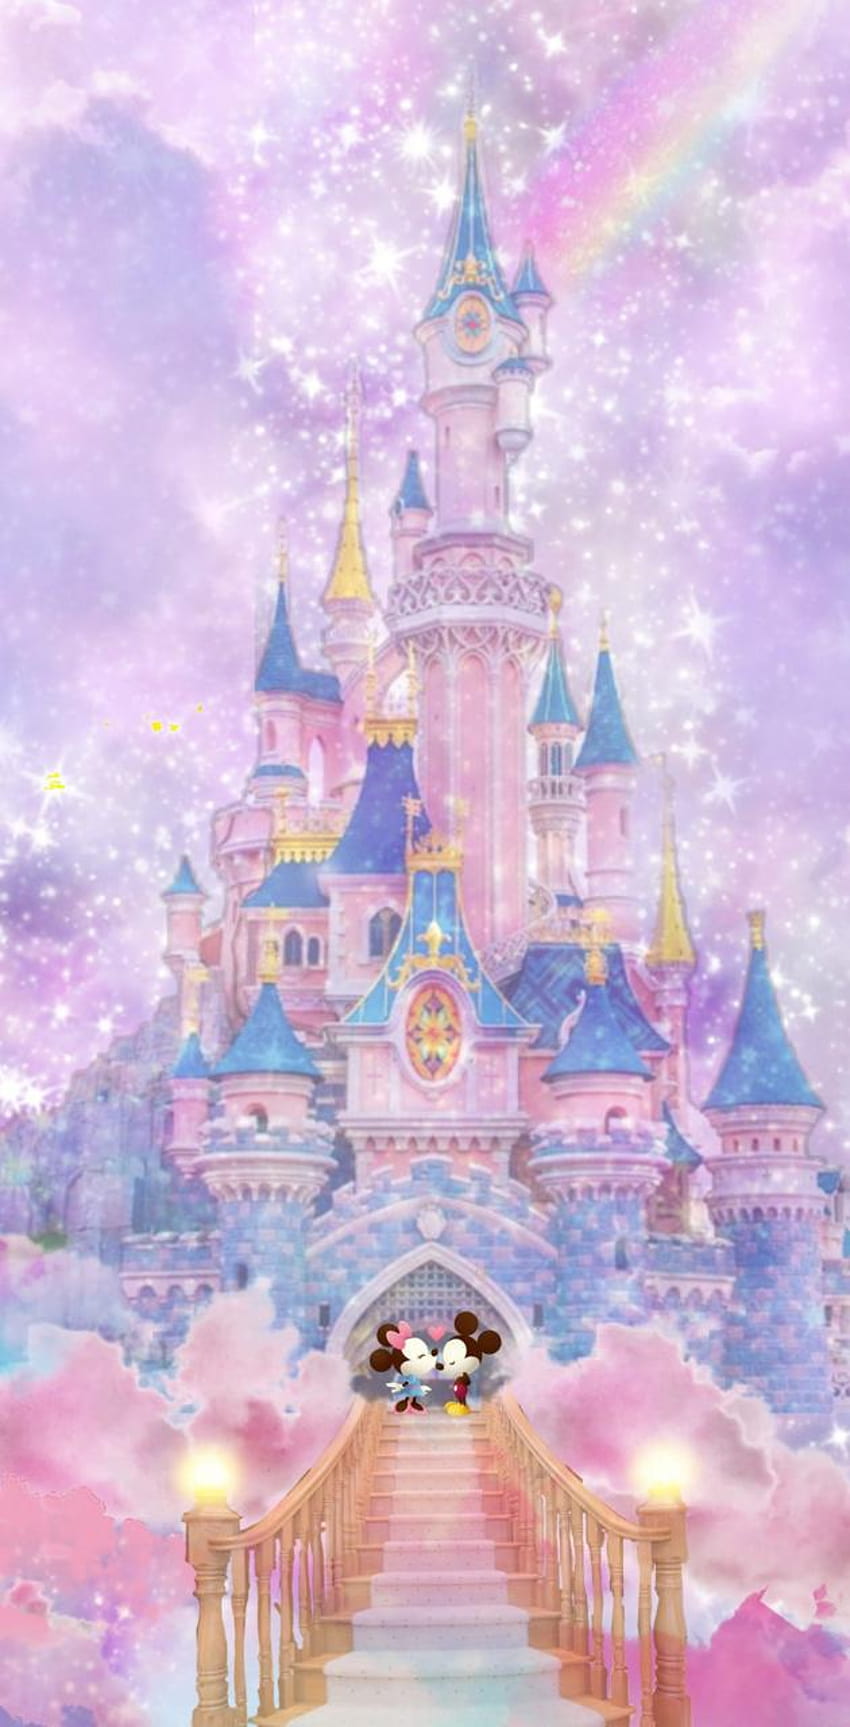 Disney castle by DisneyClarke, disney castle iphone HD phone ...